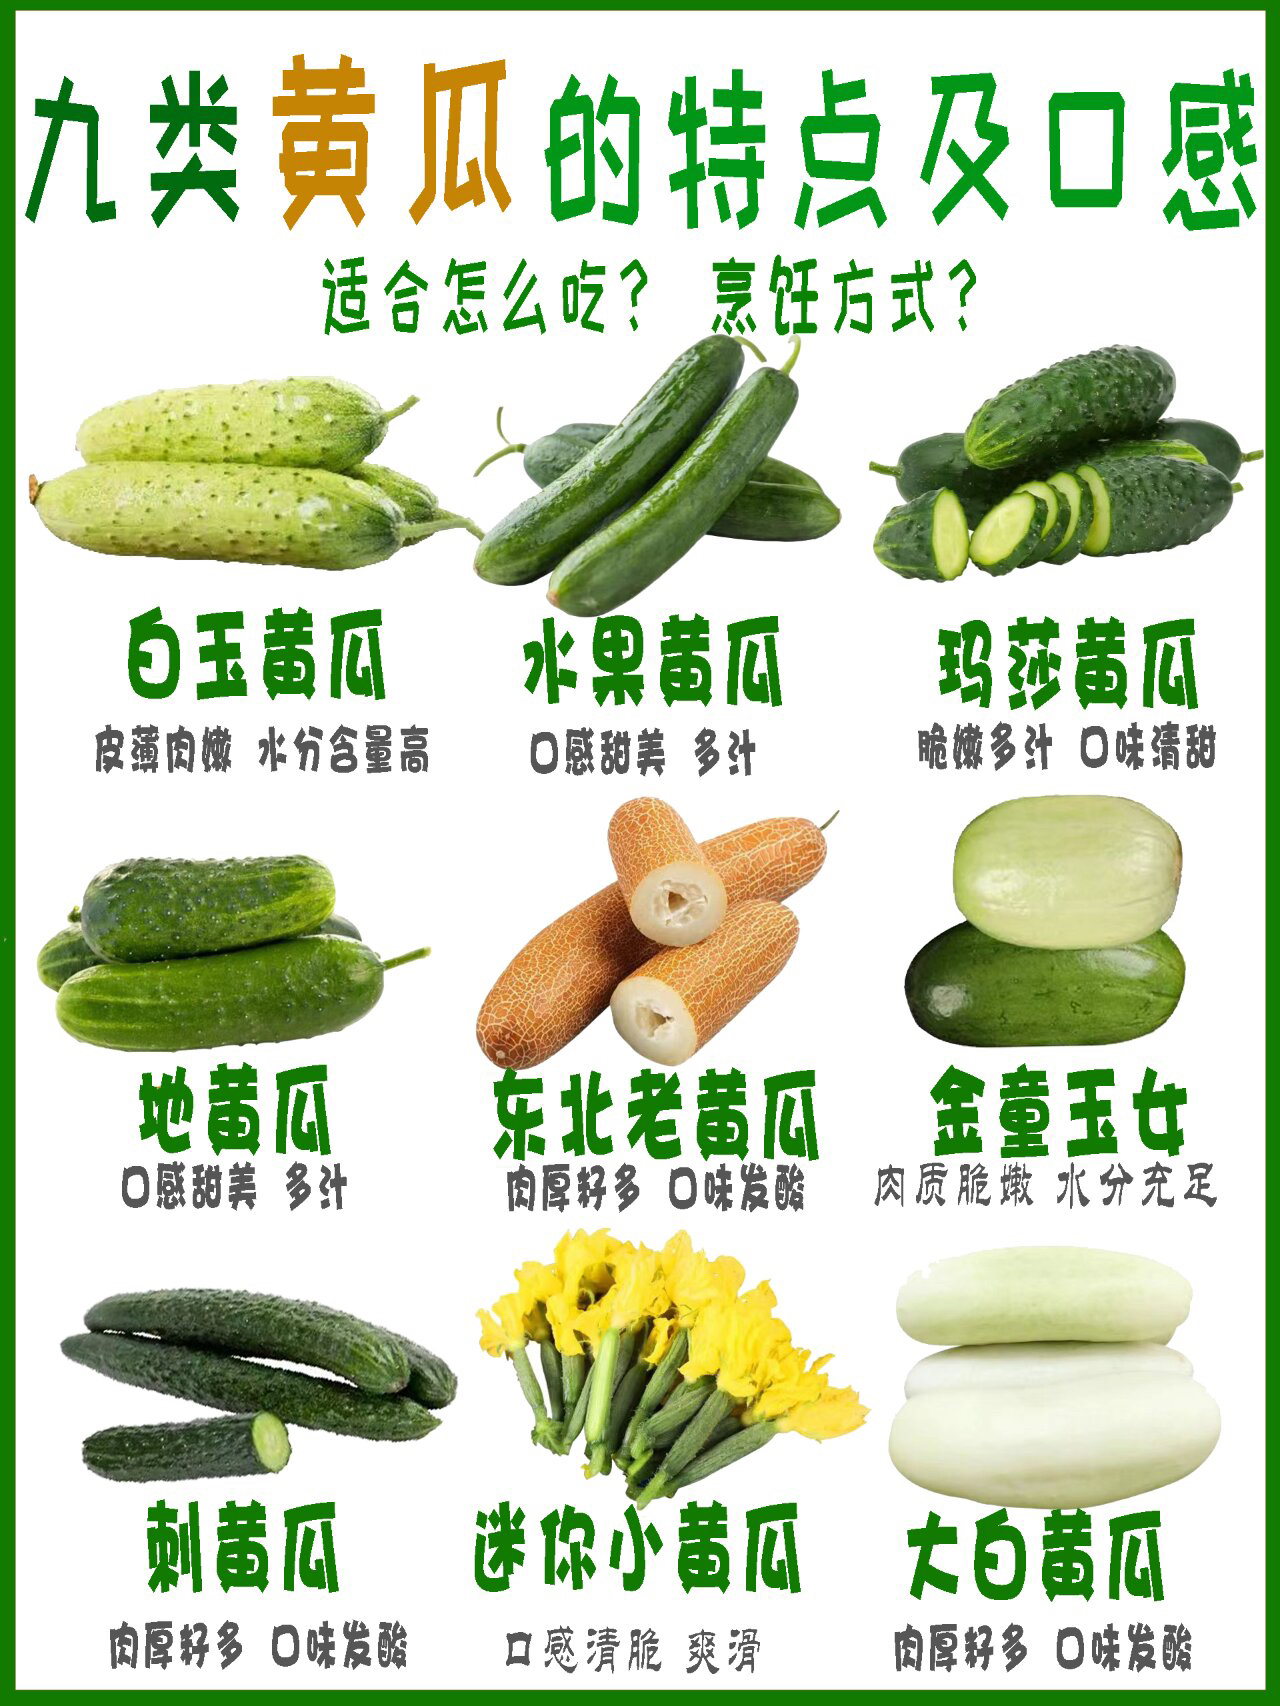 常见9种黄瓜的口感与特点介绍 黄瓜是一种常见且受欢迎的蔬菜,具有